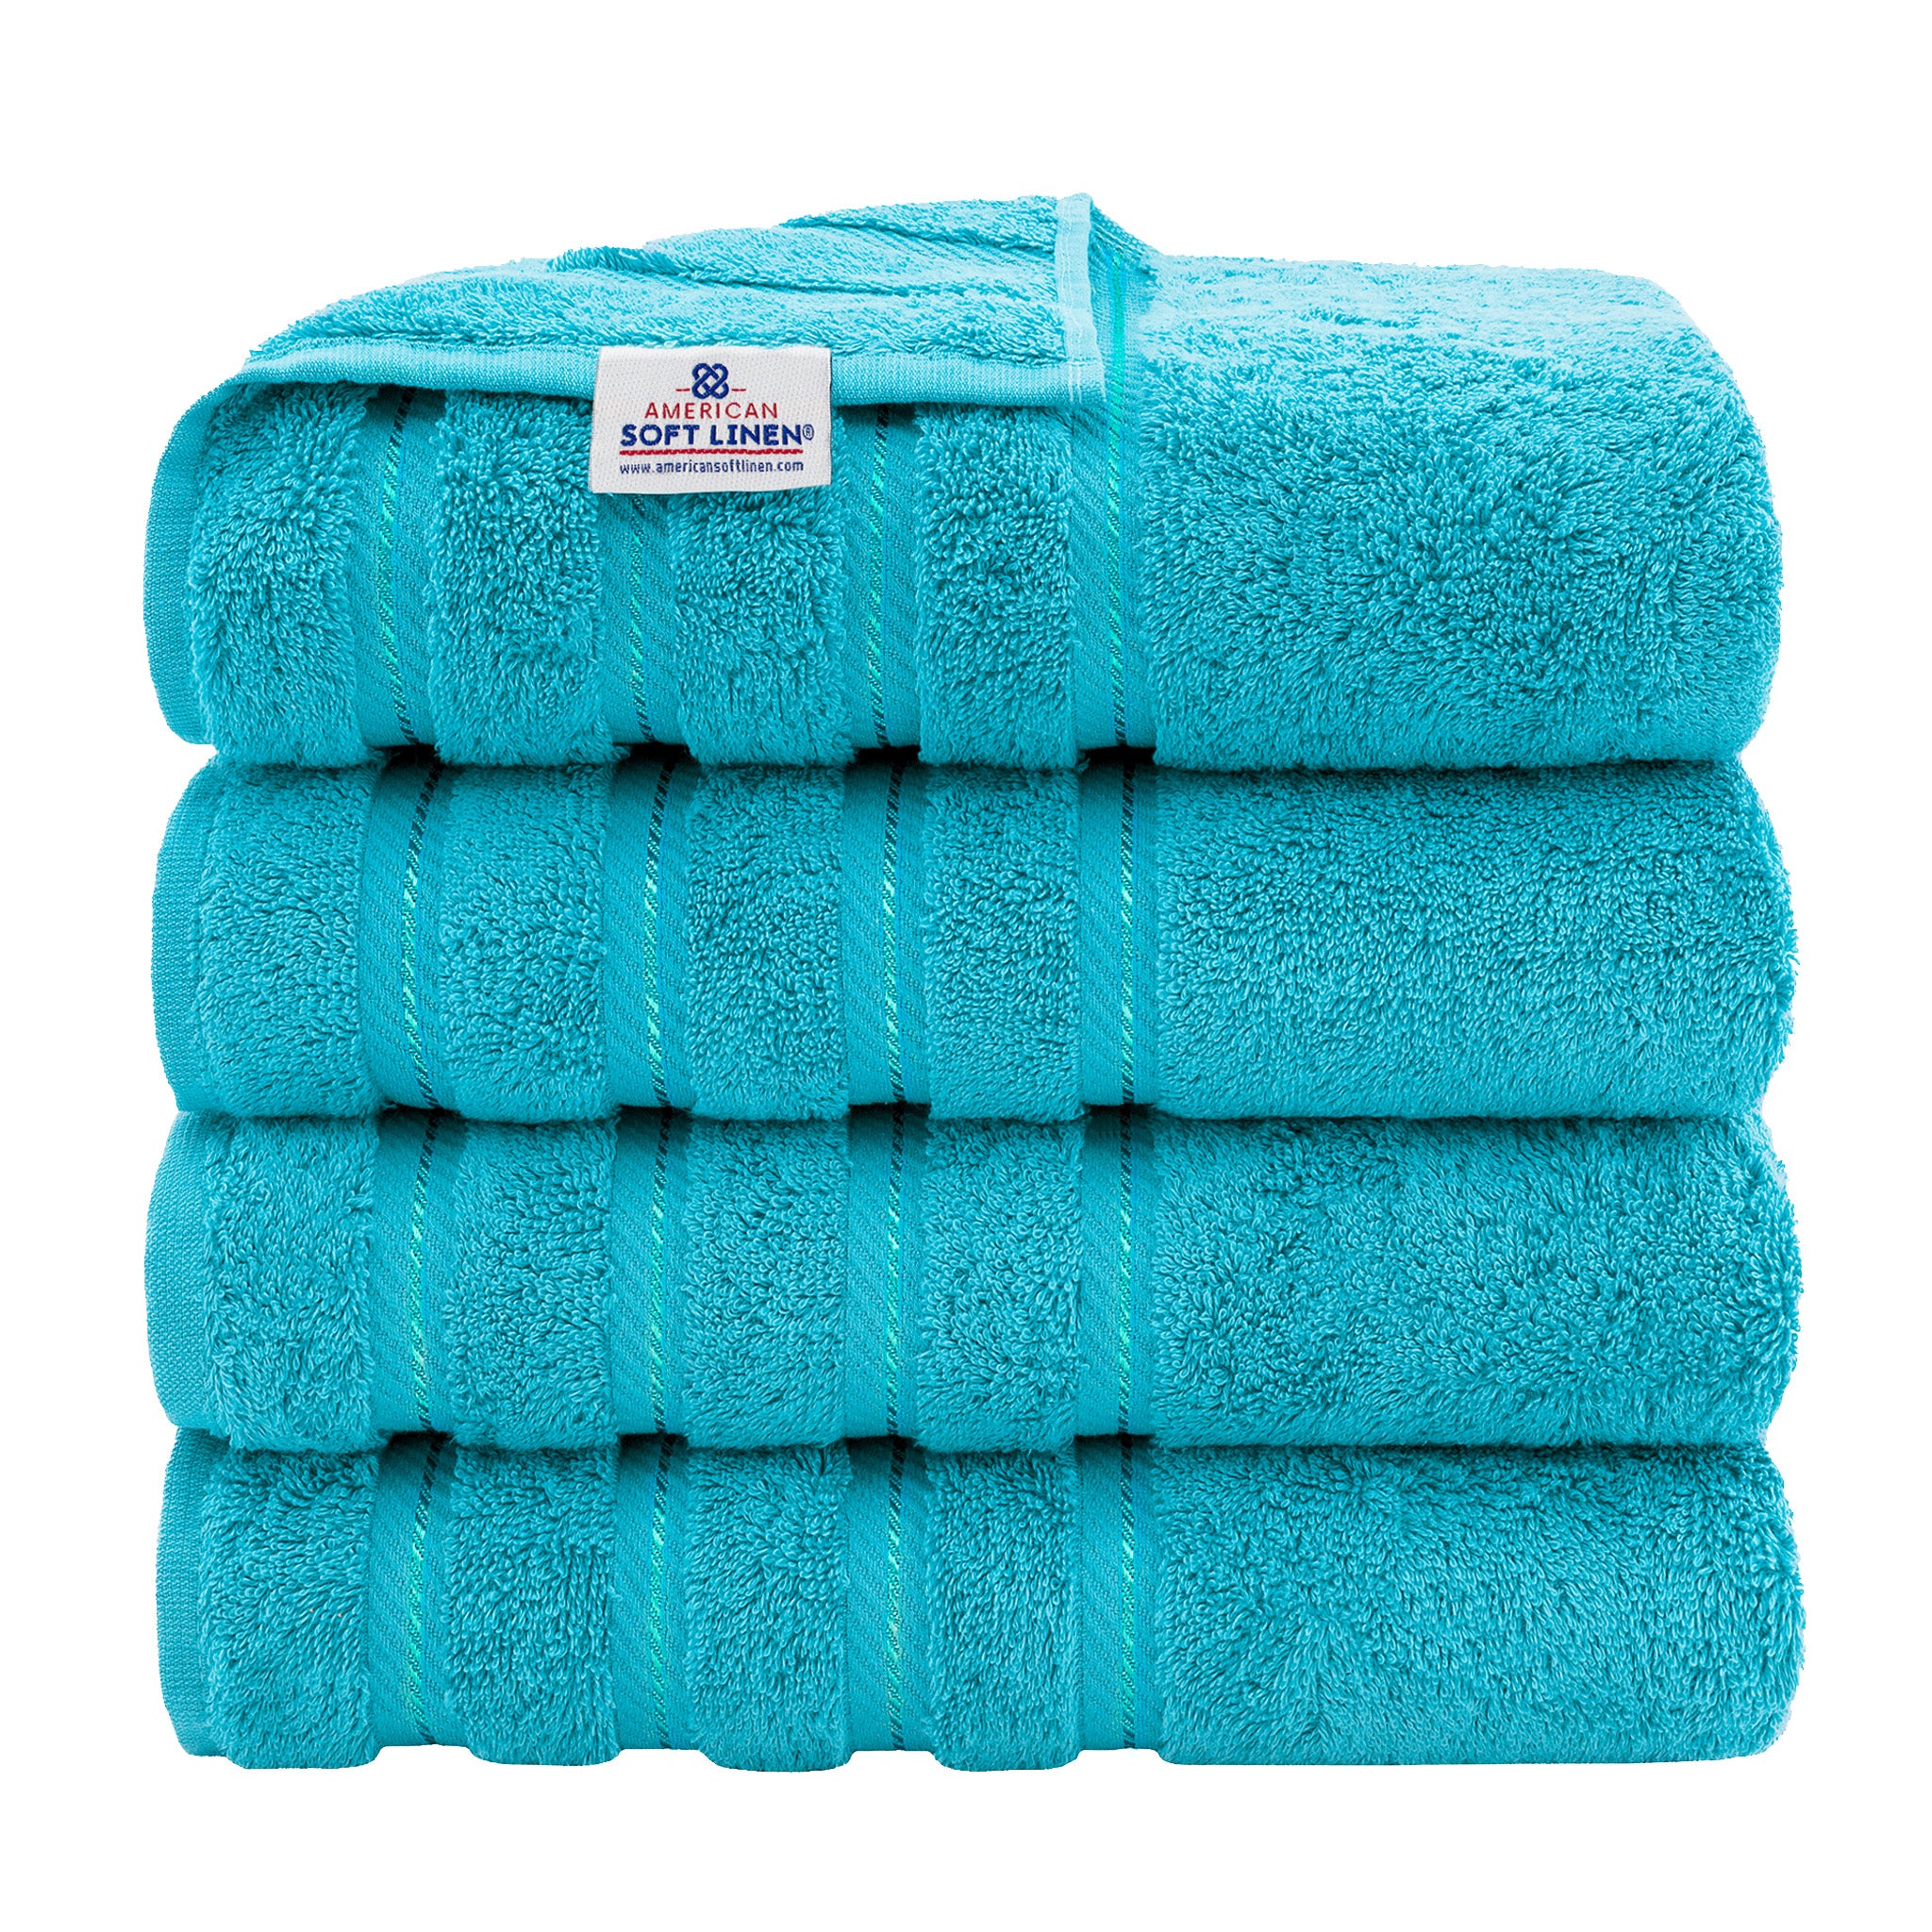 American Soft Linen 100% Turkish Cotton 4 Pack Bath Towel Set Wholesale aqua-1